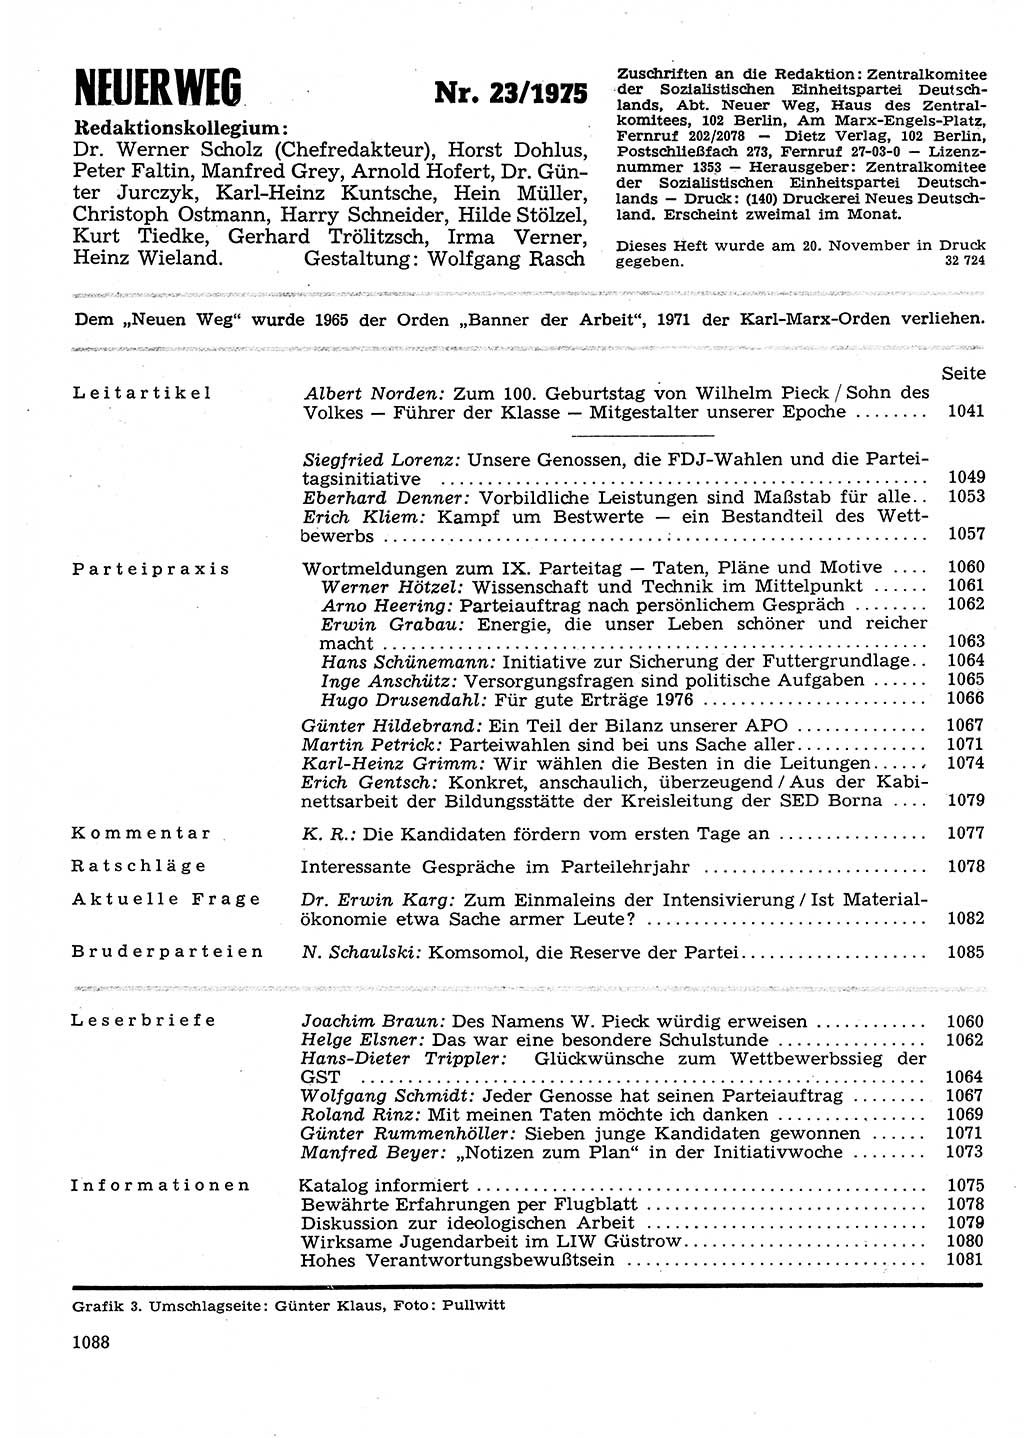 Neuer Weg (NW), Organ des Zentralkomitees (ZK) der SED (Sozialistische Einheitspartei Deutschlands) für Fragen des Parteilebens, 30. Jahrgang [Deutsche Demokratische Republik (DDR)] 1975, Seite 1088 (NW ZK SED DDR 1975, S. 1088)